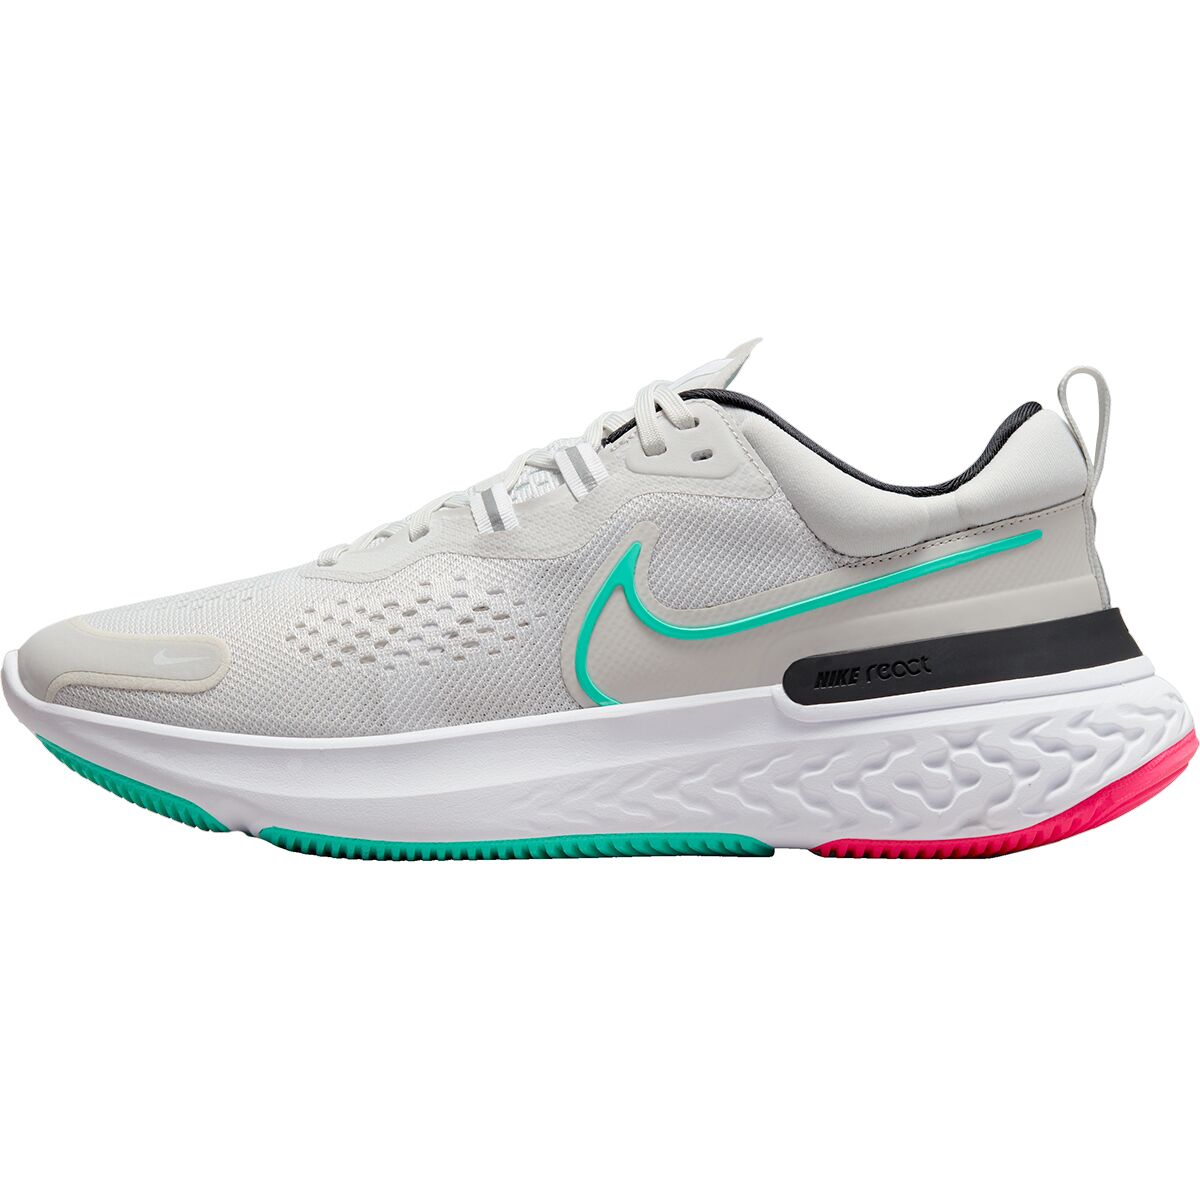 Nike React Miler 2 Running Shoe - Men's - Footwear